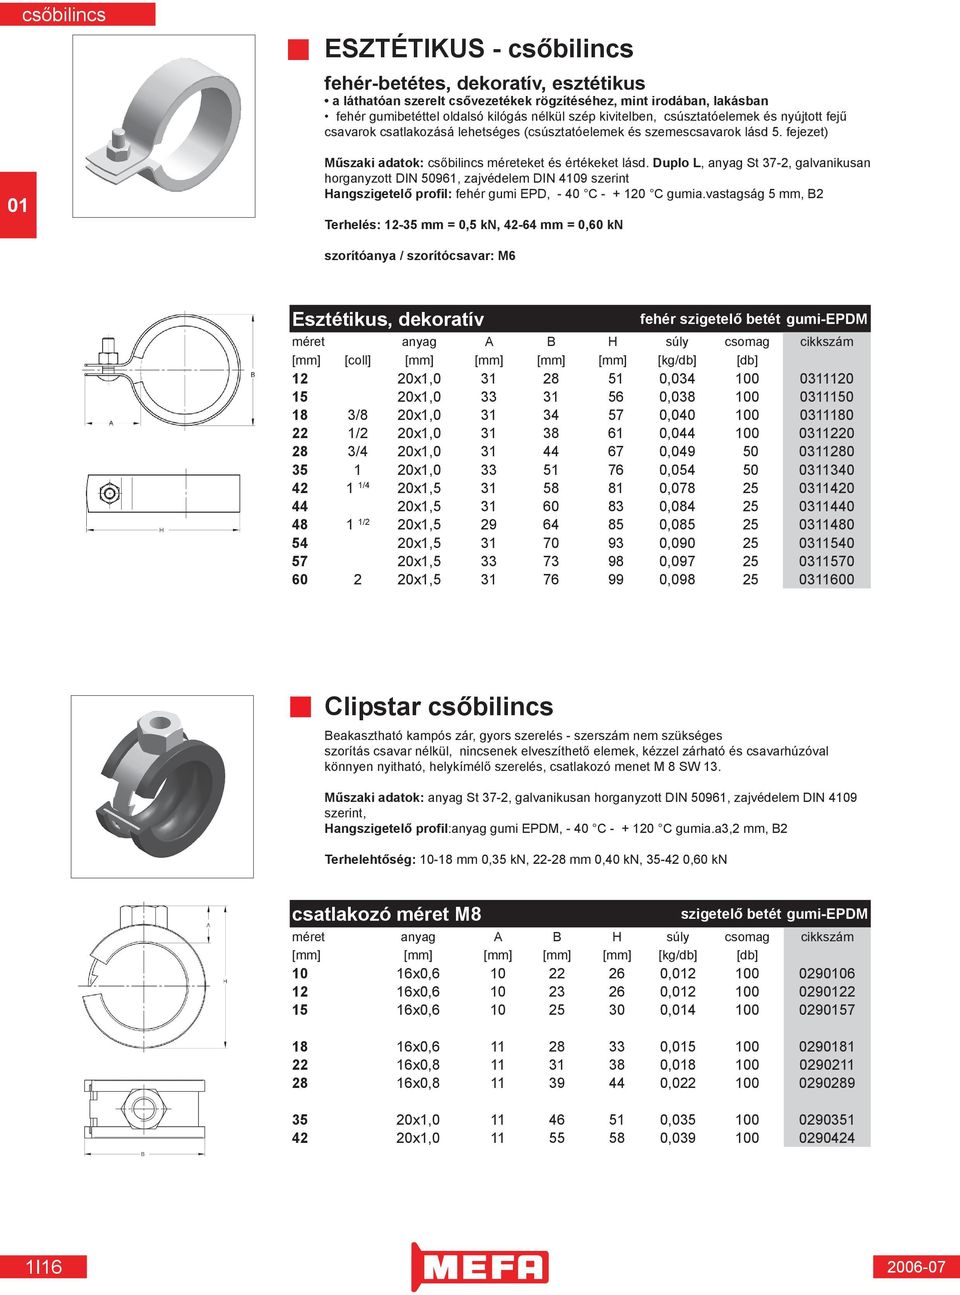 Duplo L, anyag St 37-2, galvanikusan horganyzott DIN 50961, zajvédelem DIN 4109 szerint Hangszigetelő profil: fehér gumi EPD, - 40 C - + 120 C gumia.